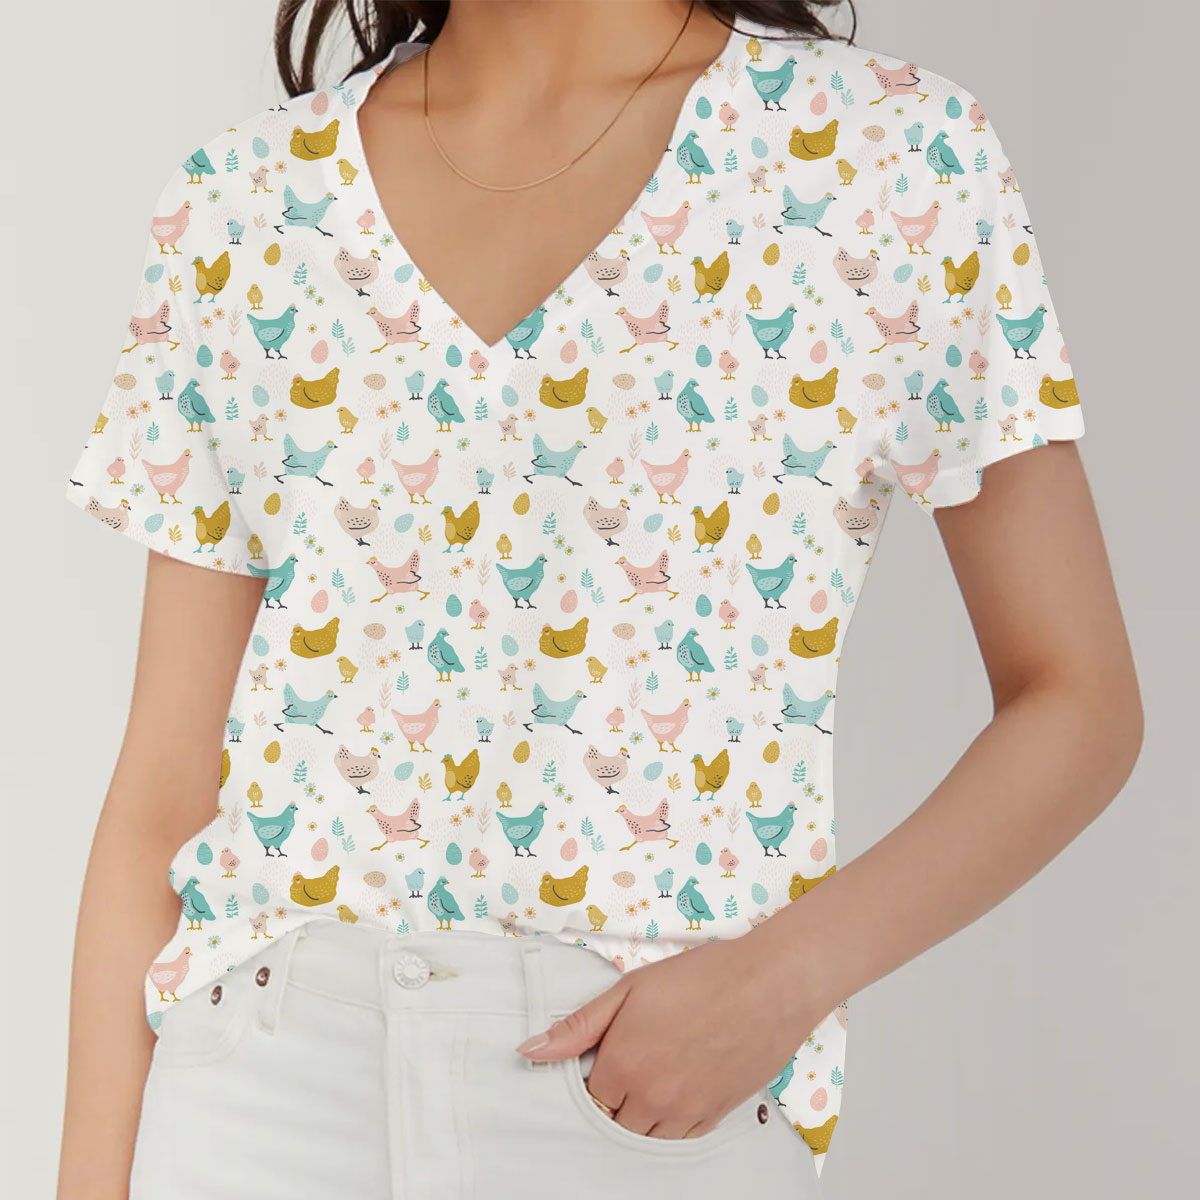 Cute Chicken V-Neck Women's T-Shirt_1_2.1